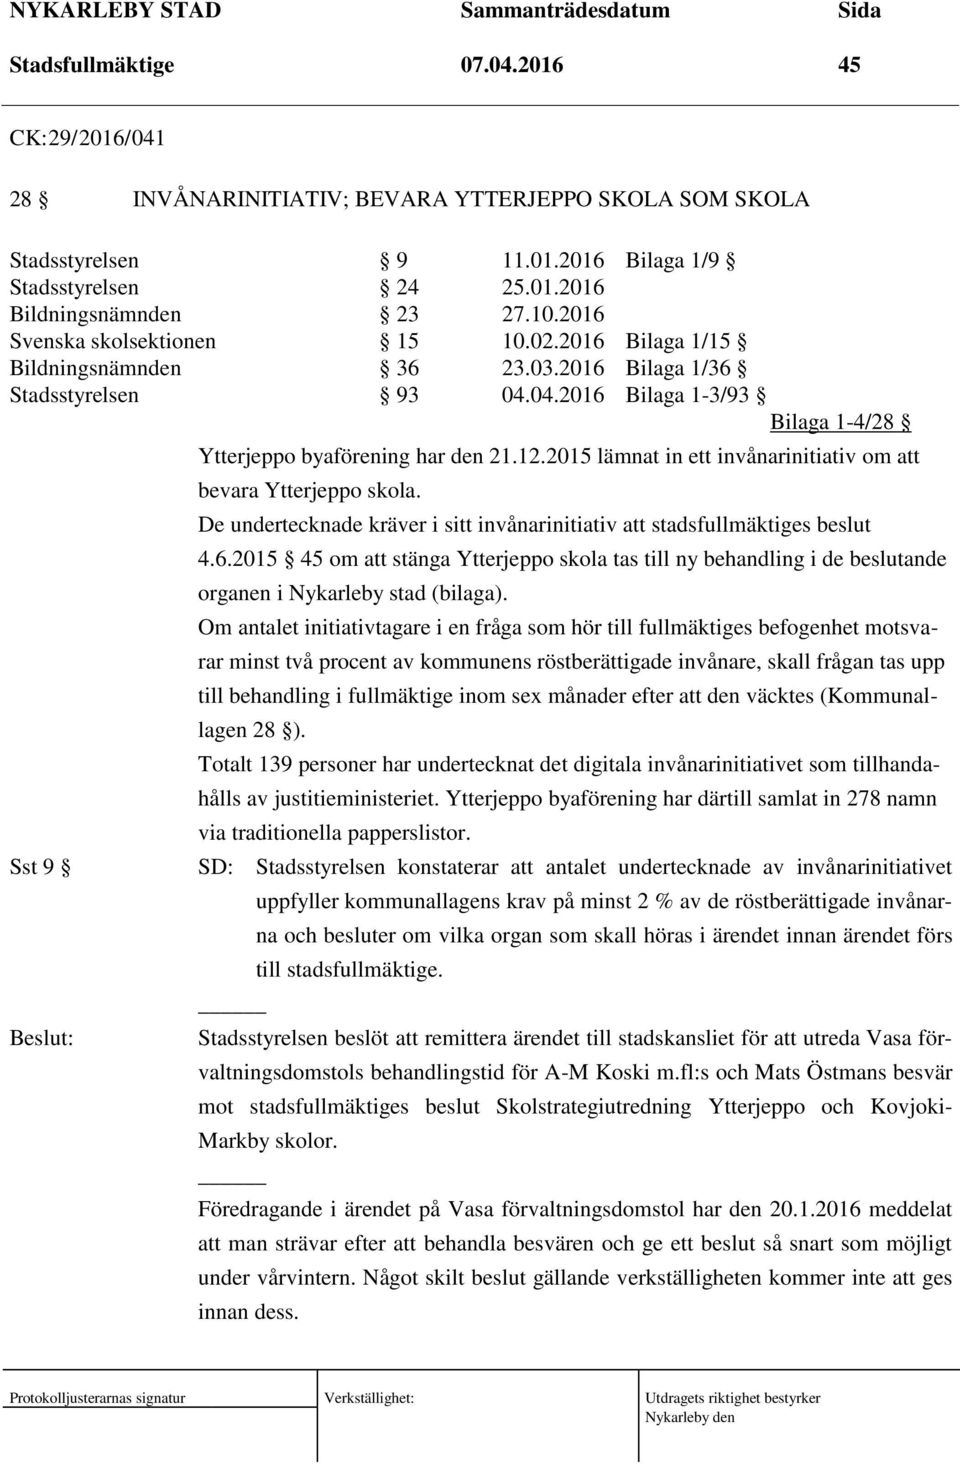 2015 lämnat in ett invånarinitiativ om att bevara Ytterjeppo skola. De undertecknade kräver i sitt invånarinitiativ att stadsfullmäktiges beslut 4.6.